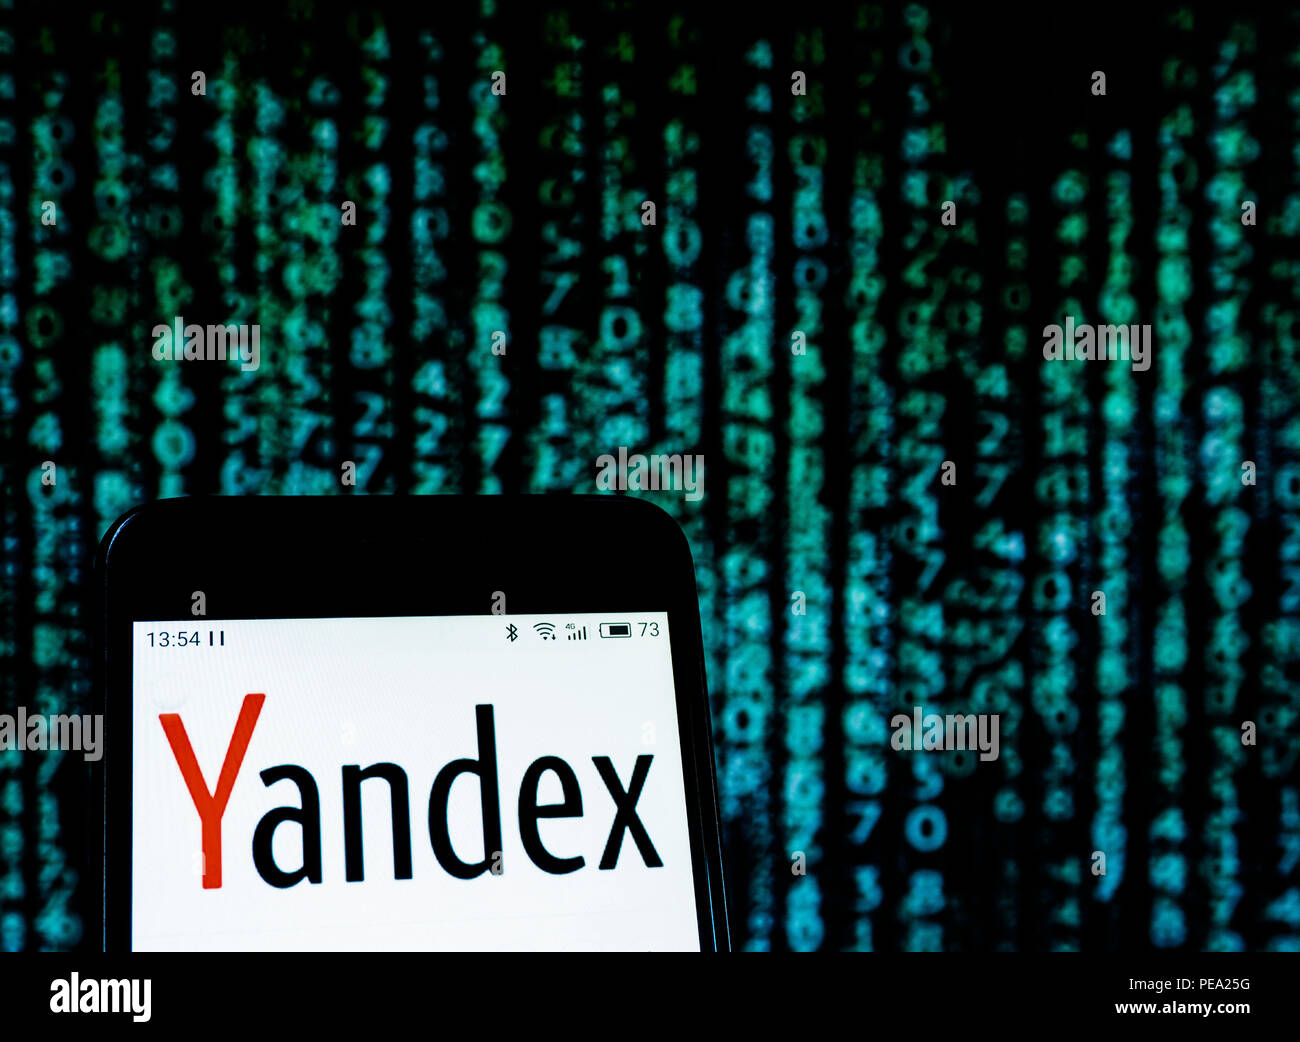 Logo Yandex vu affichée sur téléphone intelligent. Dans le cadre de l'introduction le 22 août de nouvelles sanctions contre la Russie dans le cas d'Skripal, actions inscrites dans la liste des entreprises a fortement baissé. Banque D'Images